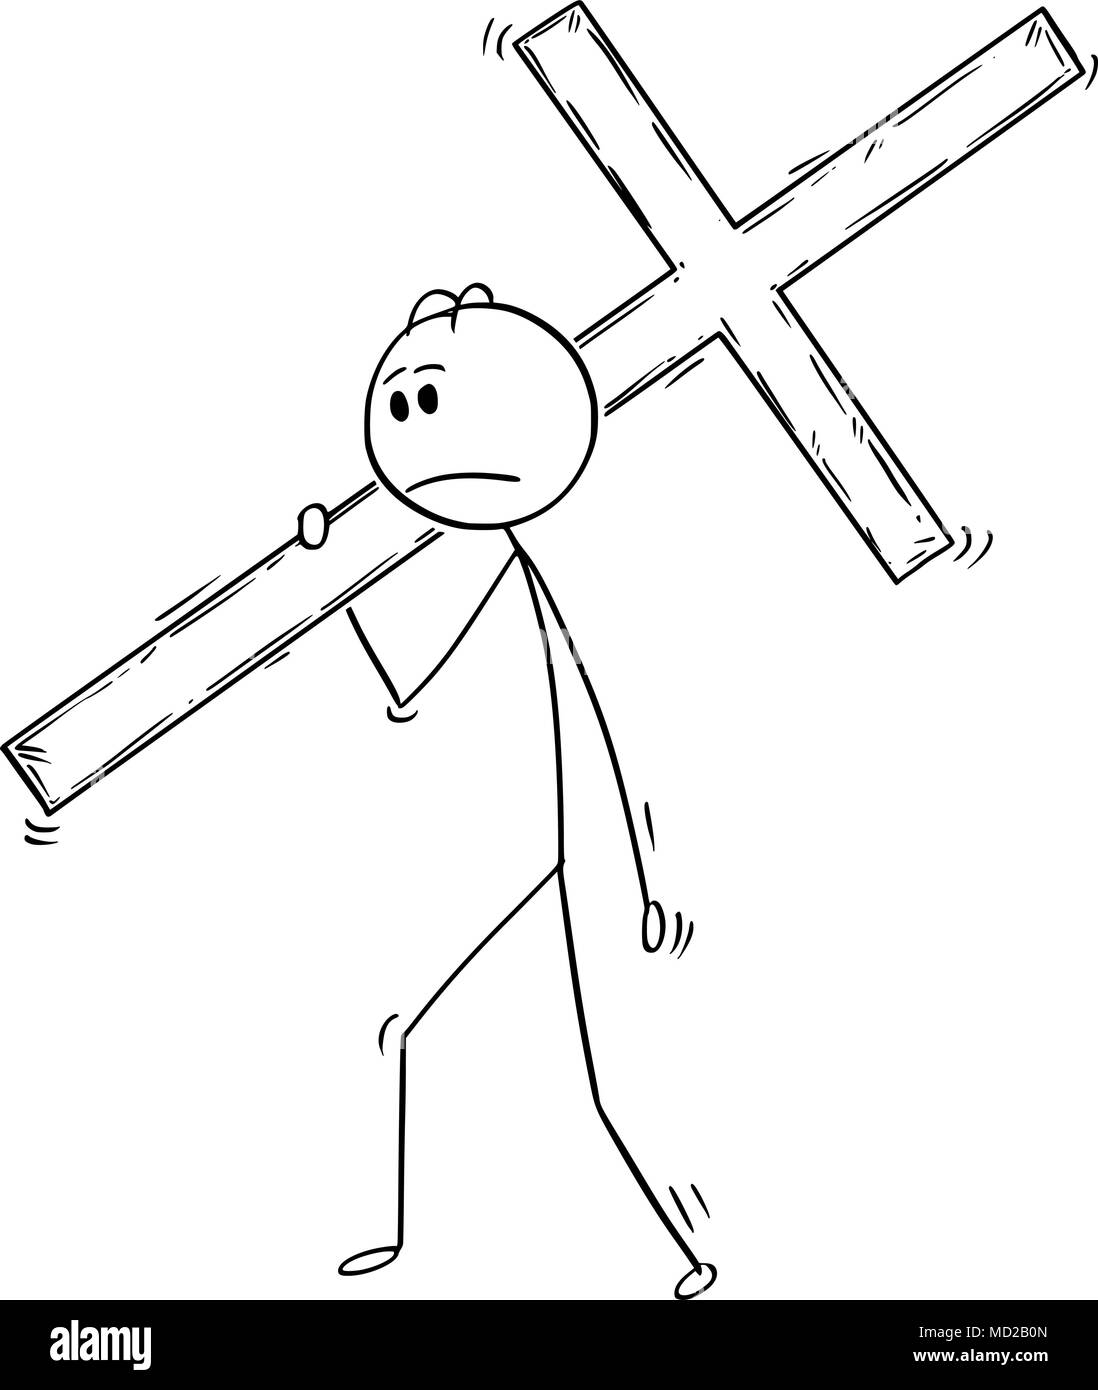 Caricature de l'homme ou Businessman Carrying Grande croix de bois Illustration de Vecteur